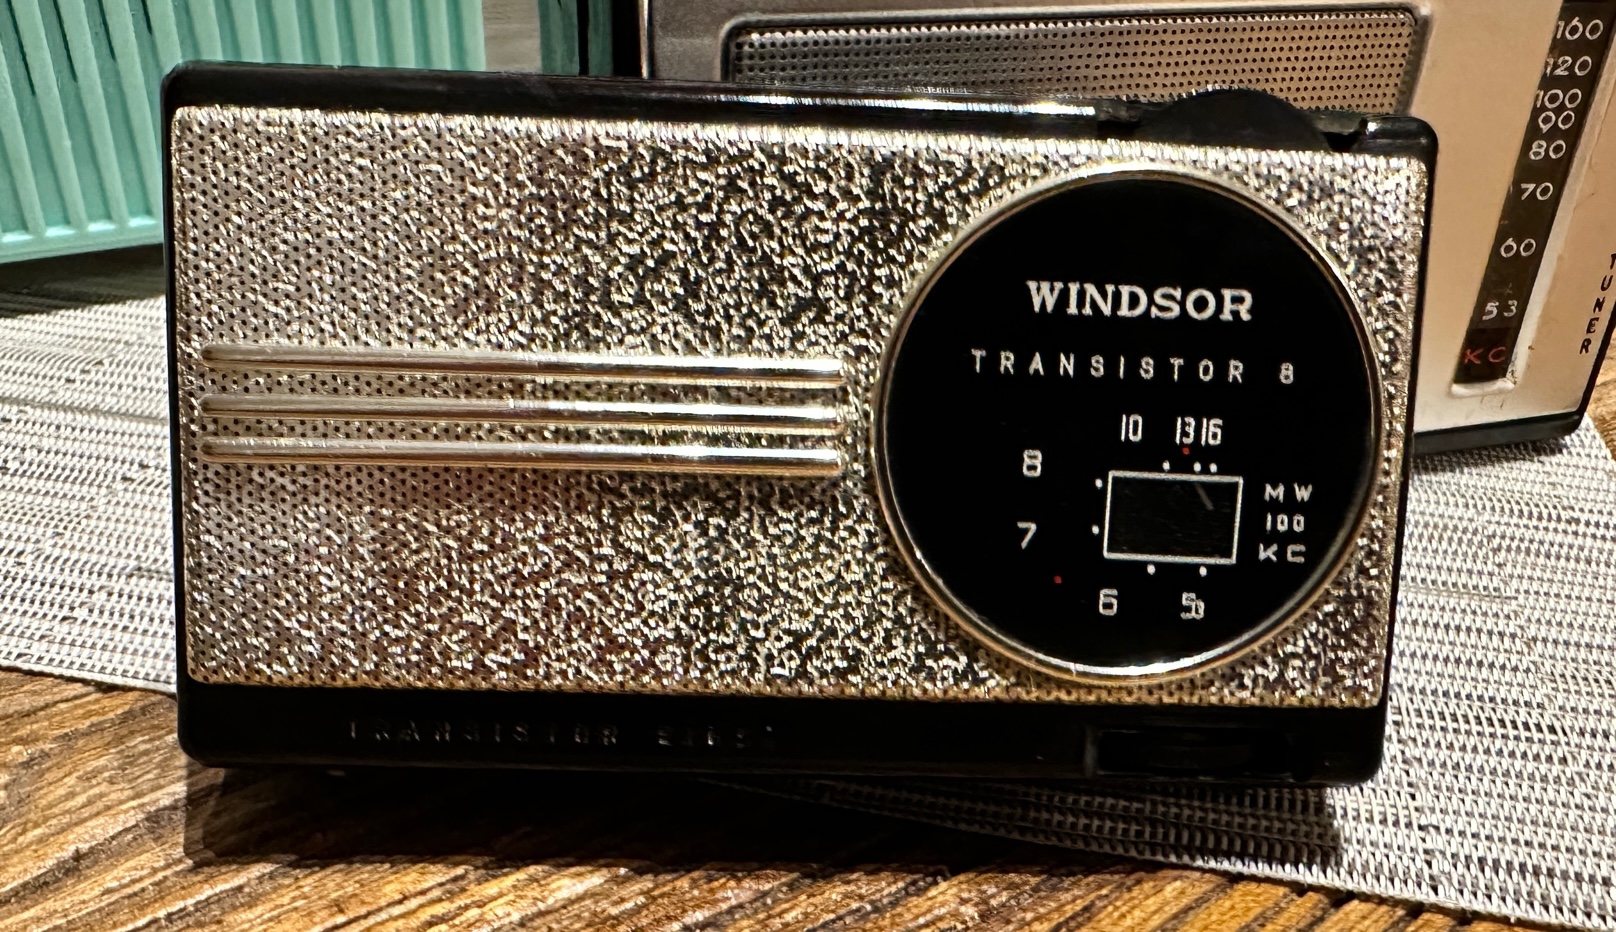 1968 Windsor Transistor 8